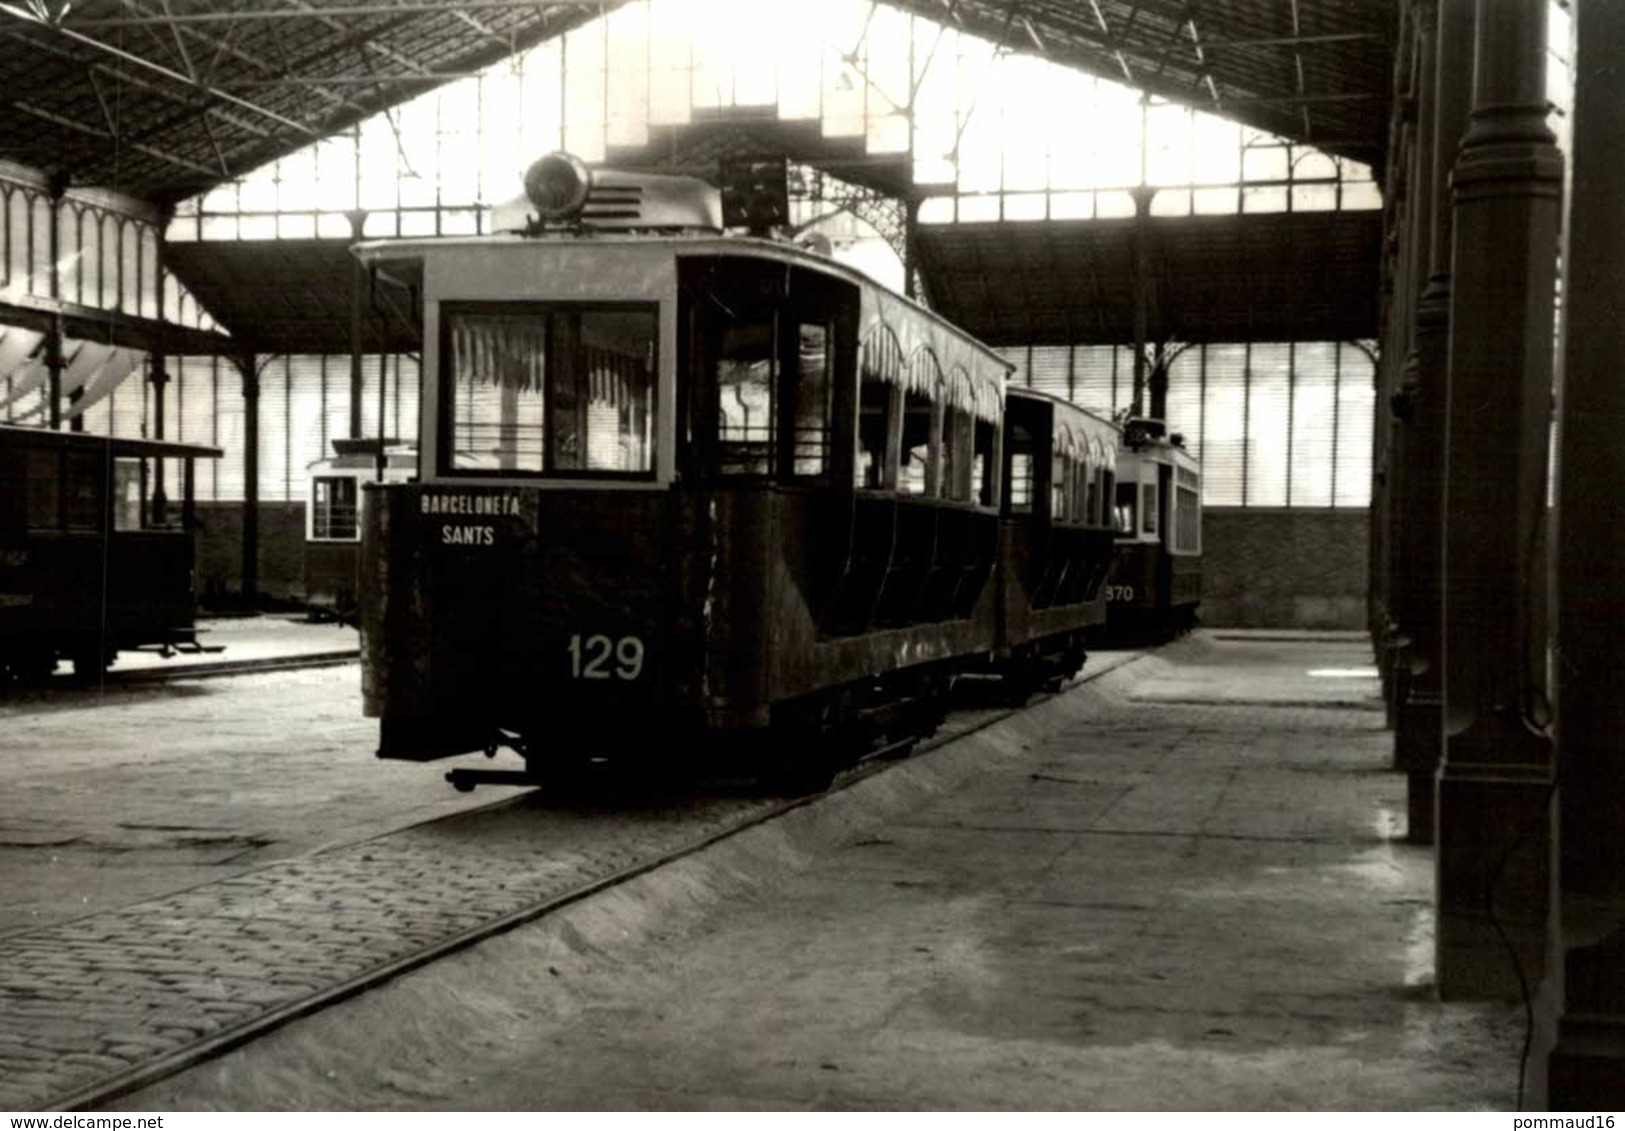 Photographie D'une Locomotive 129 Barceloneta Sants - Reproduction - Trains